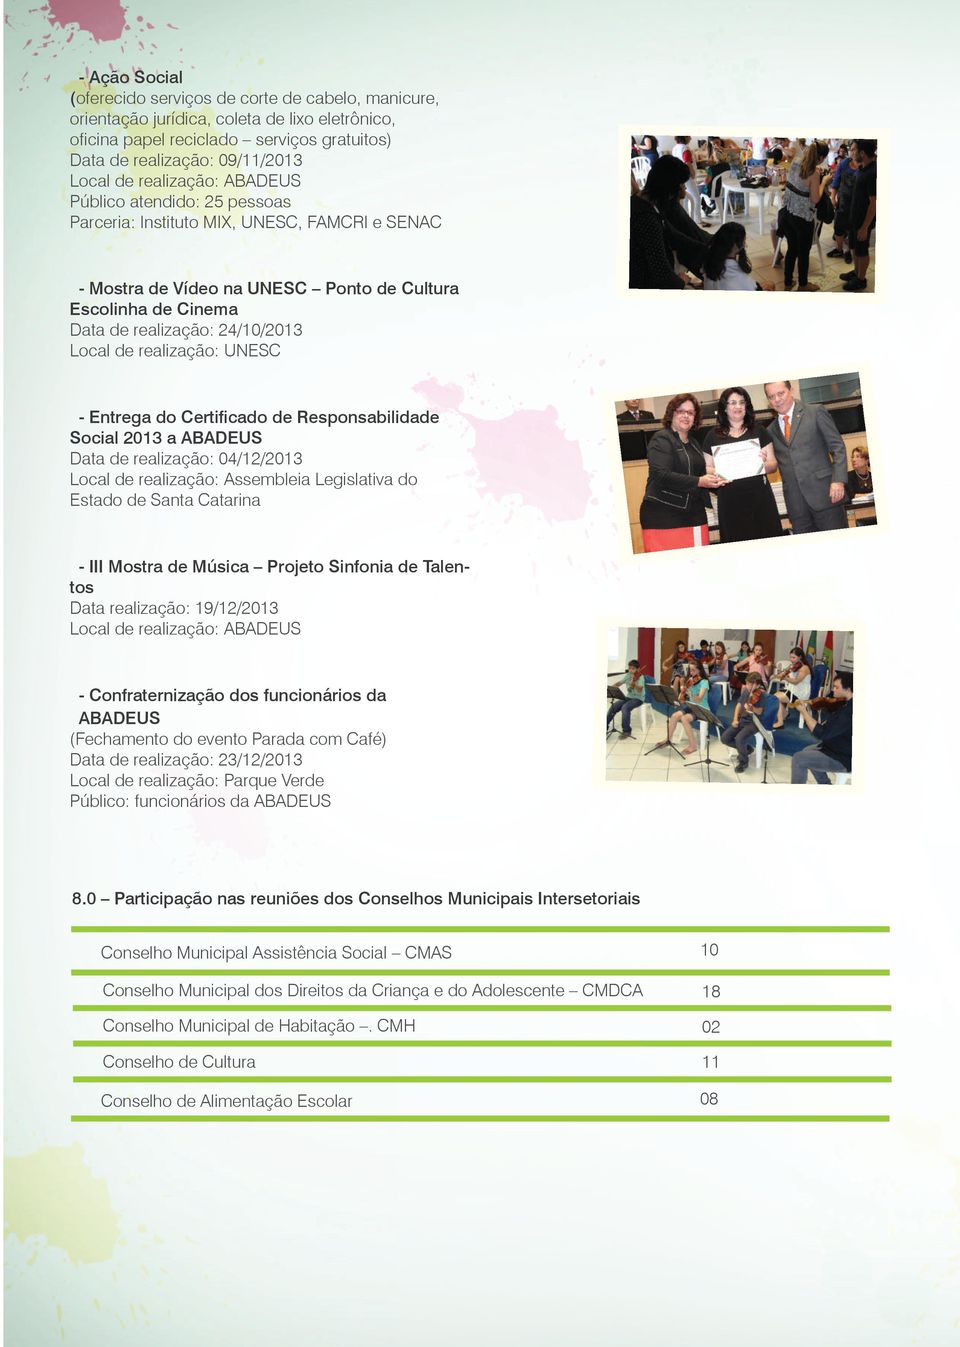 realização: UNESC - Entrega do Certificado de Responsabilidade Social 2013 a ABADEUS Data de realização: 04/12/2013 Local de realização: Assembleia Legislativa do Estado de Santa Catarina - III